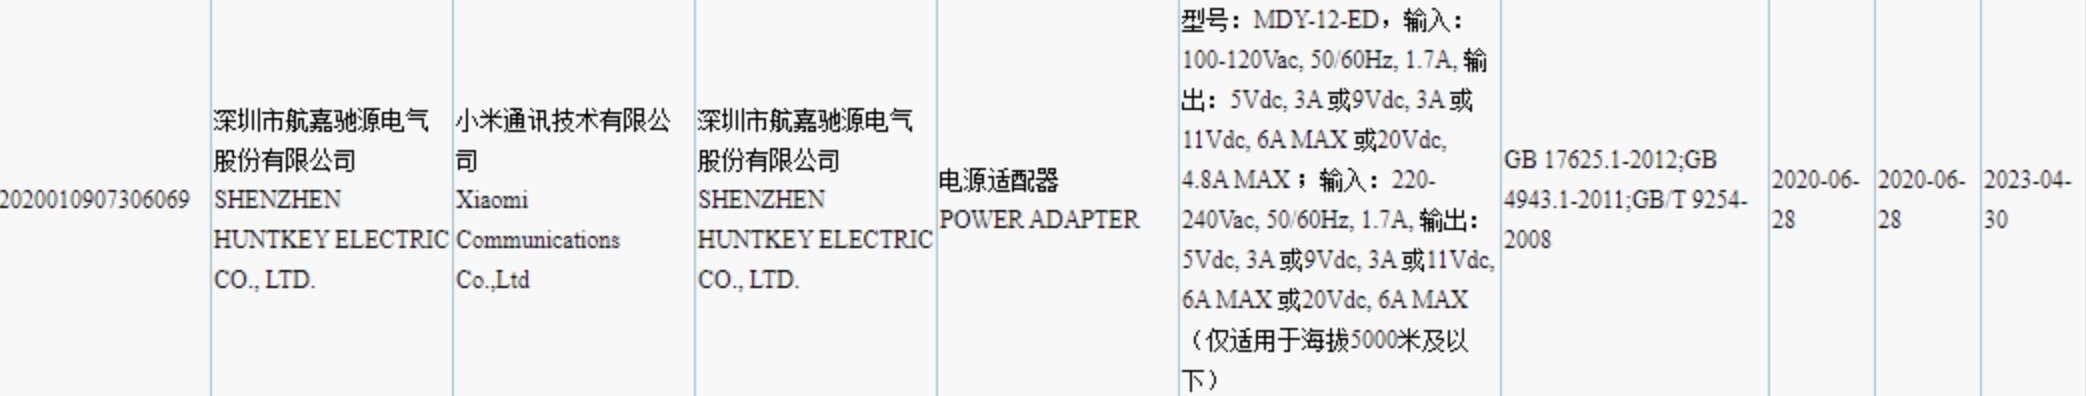 Certificação de carregador com 120W de potência da Xiaomi.